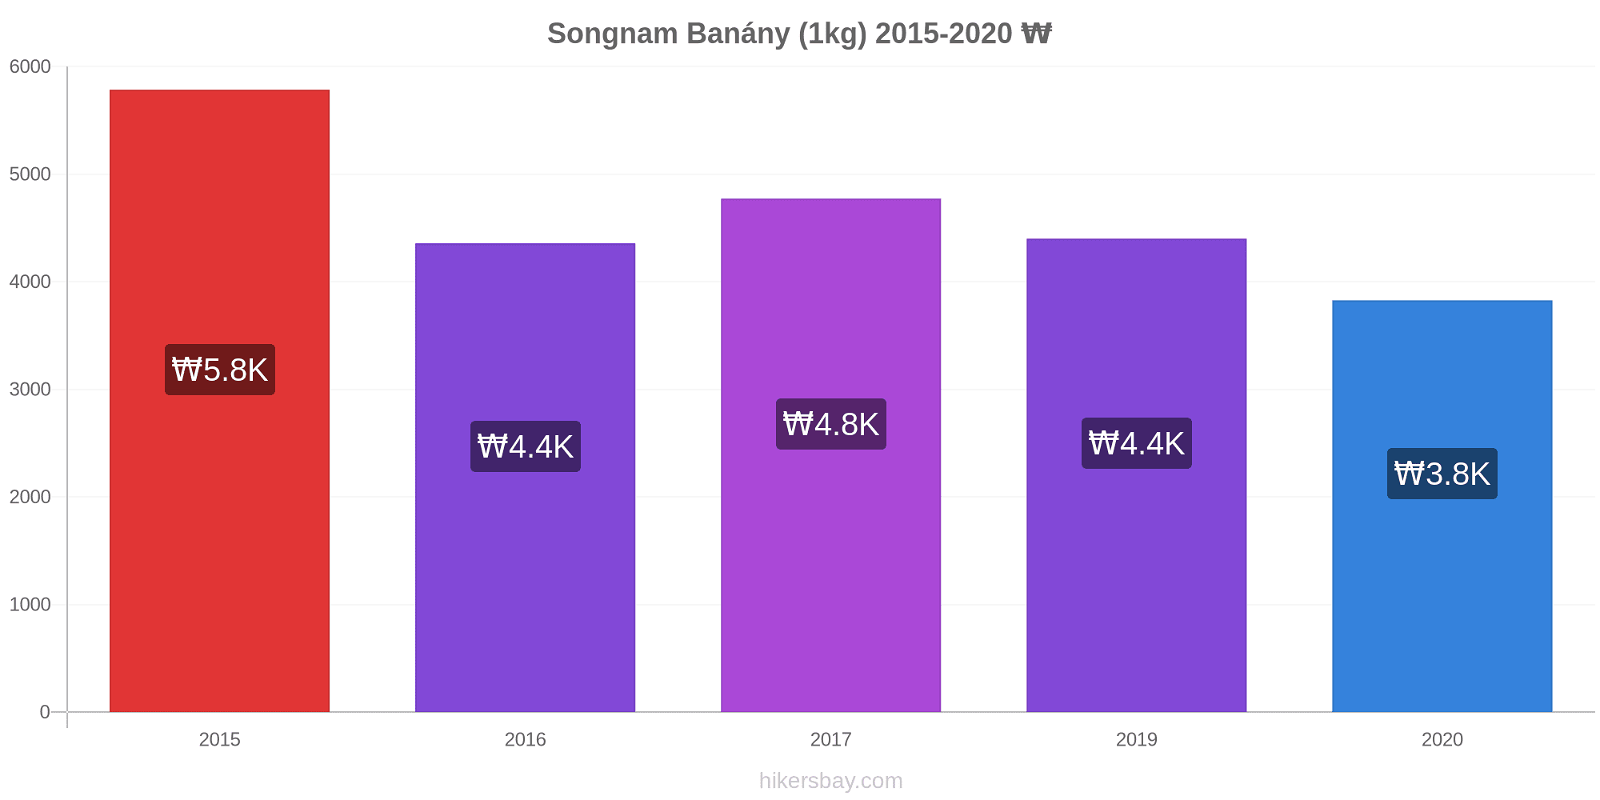 Songnam změny cen Banány (1kg) hikersbay.com